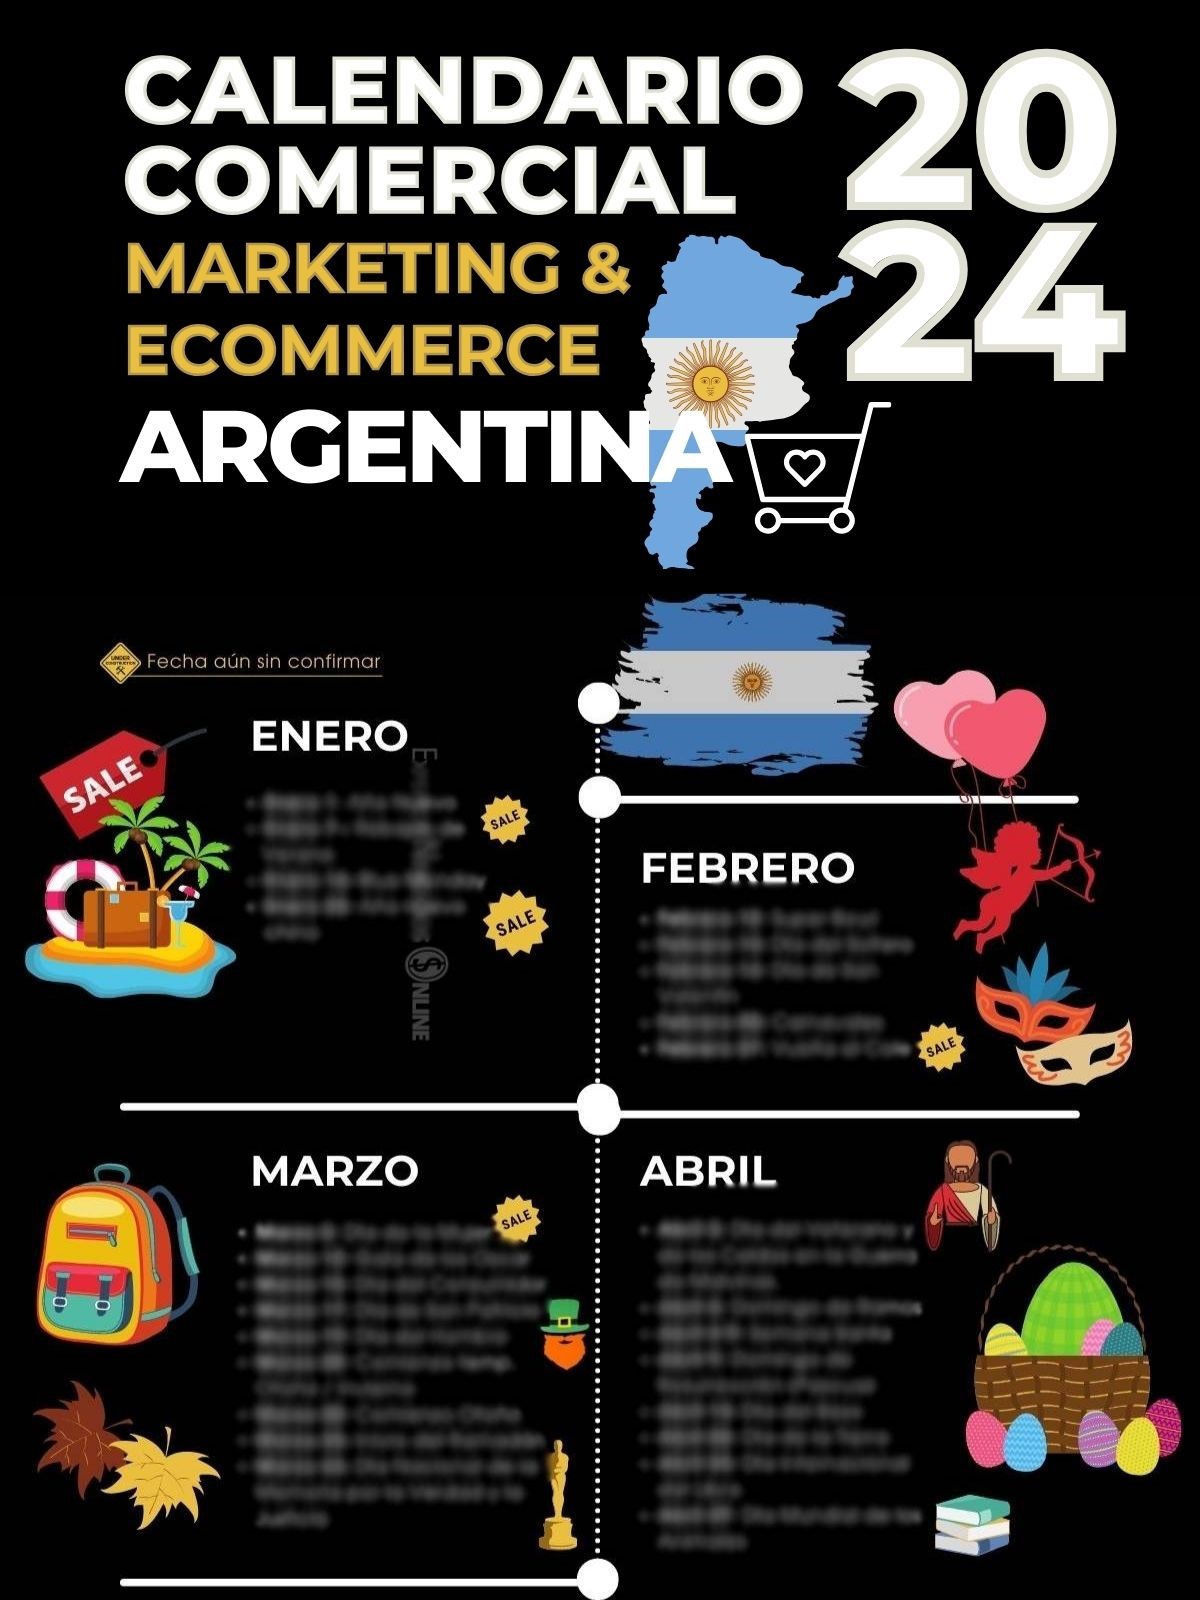 Descargar calendario marketing Argentina 2023